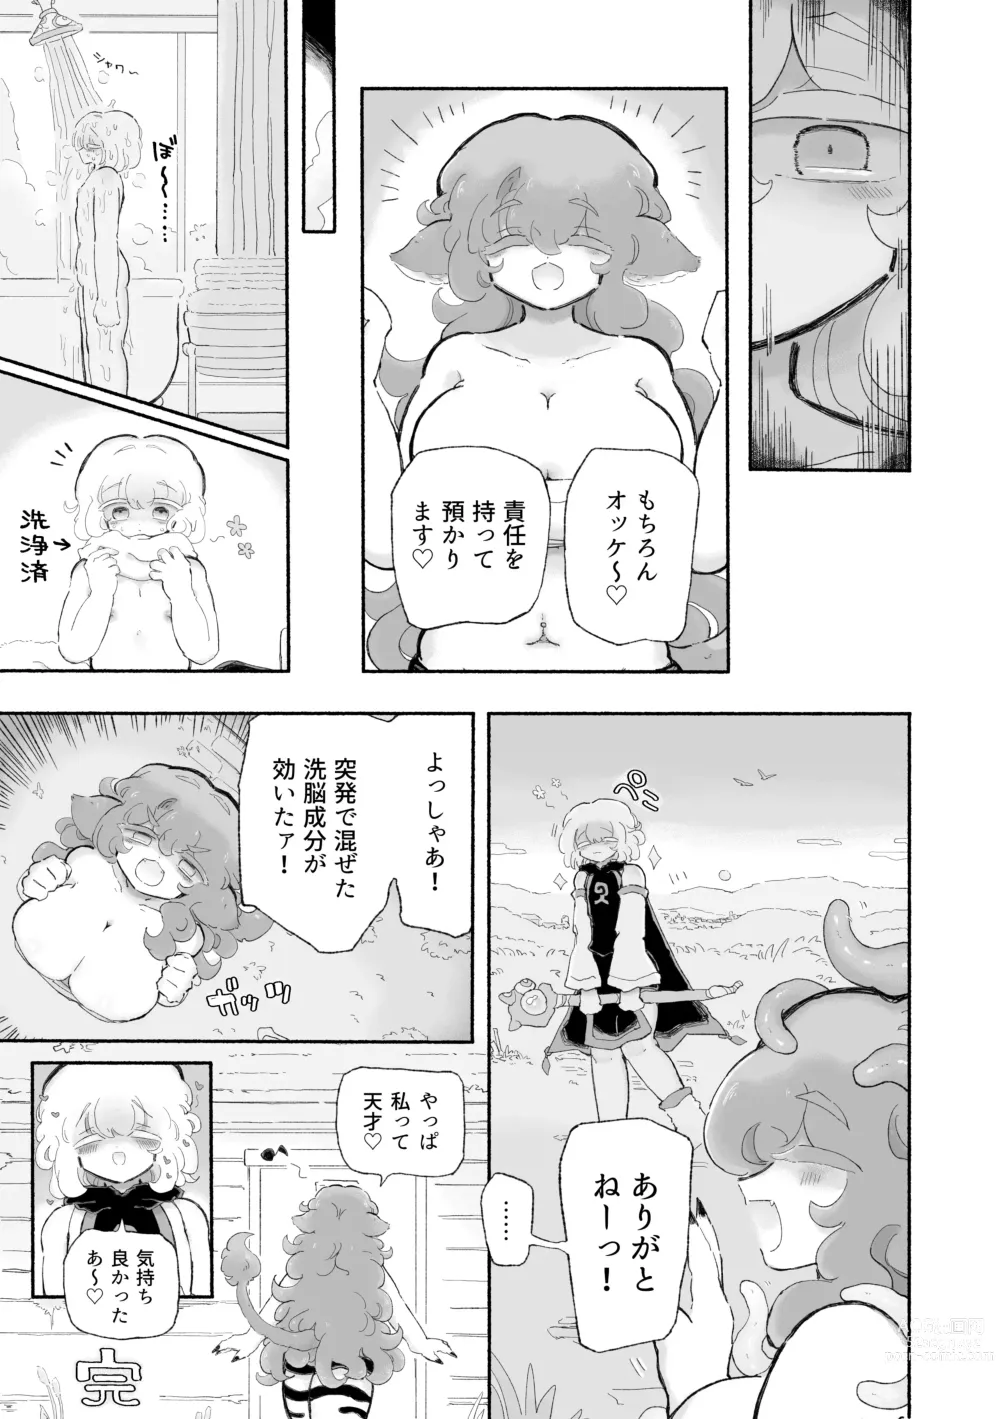 Page 33 of doujinshi Torodashi. ~Museiki-ka Kyosei Taiken Beit~